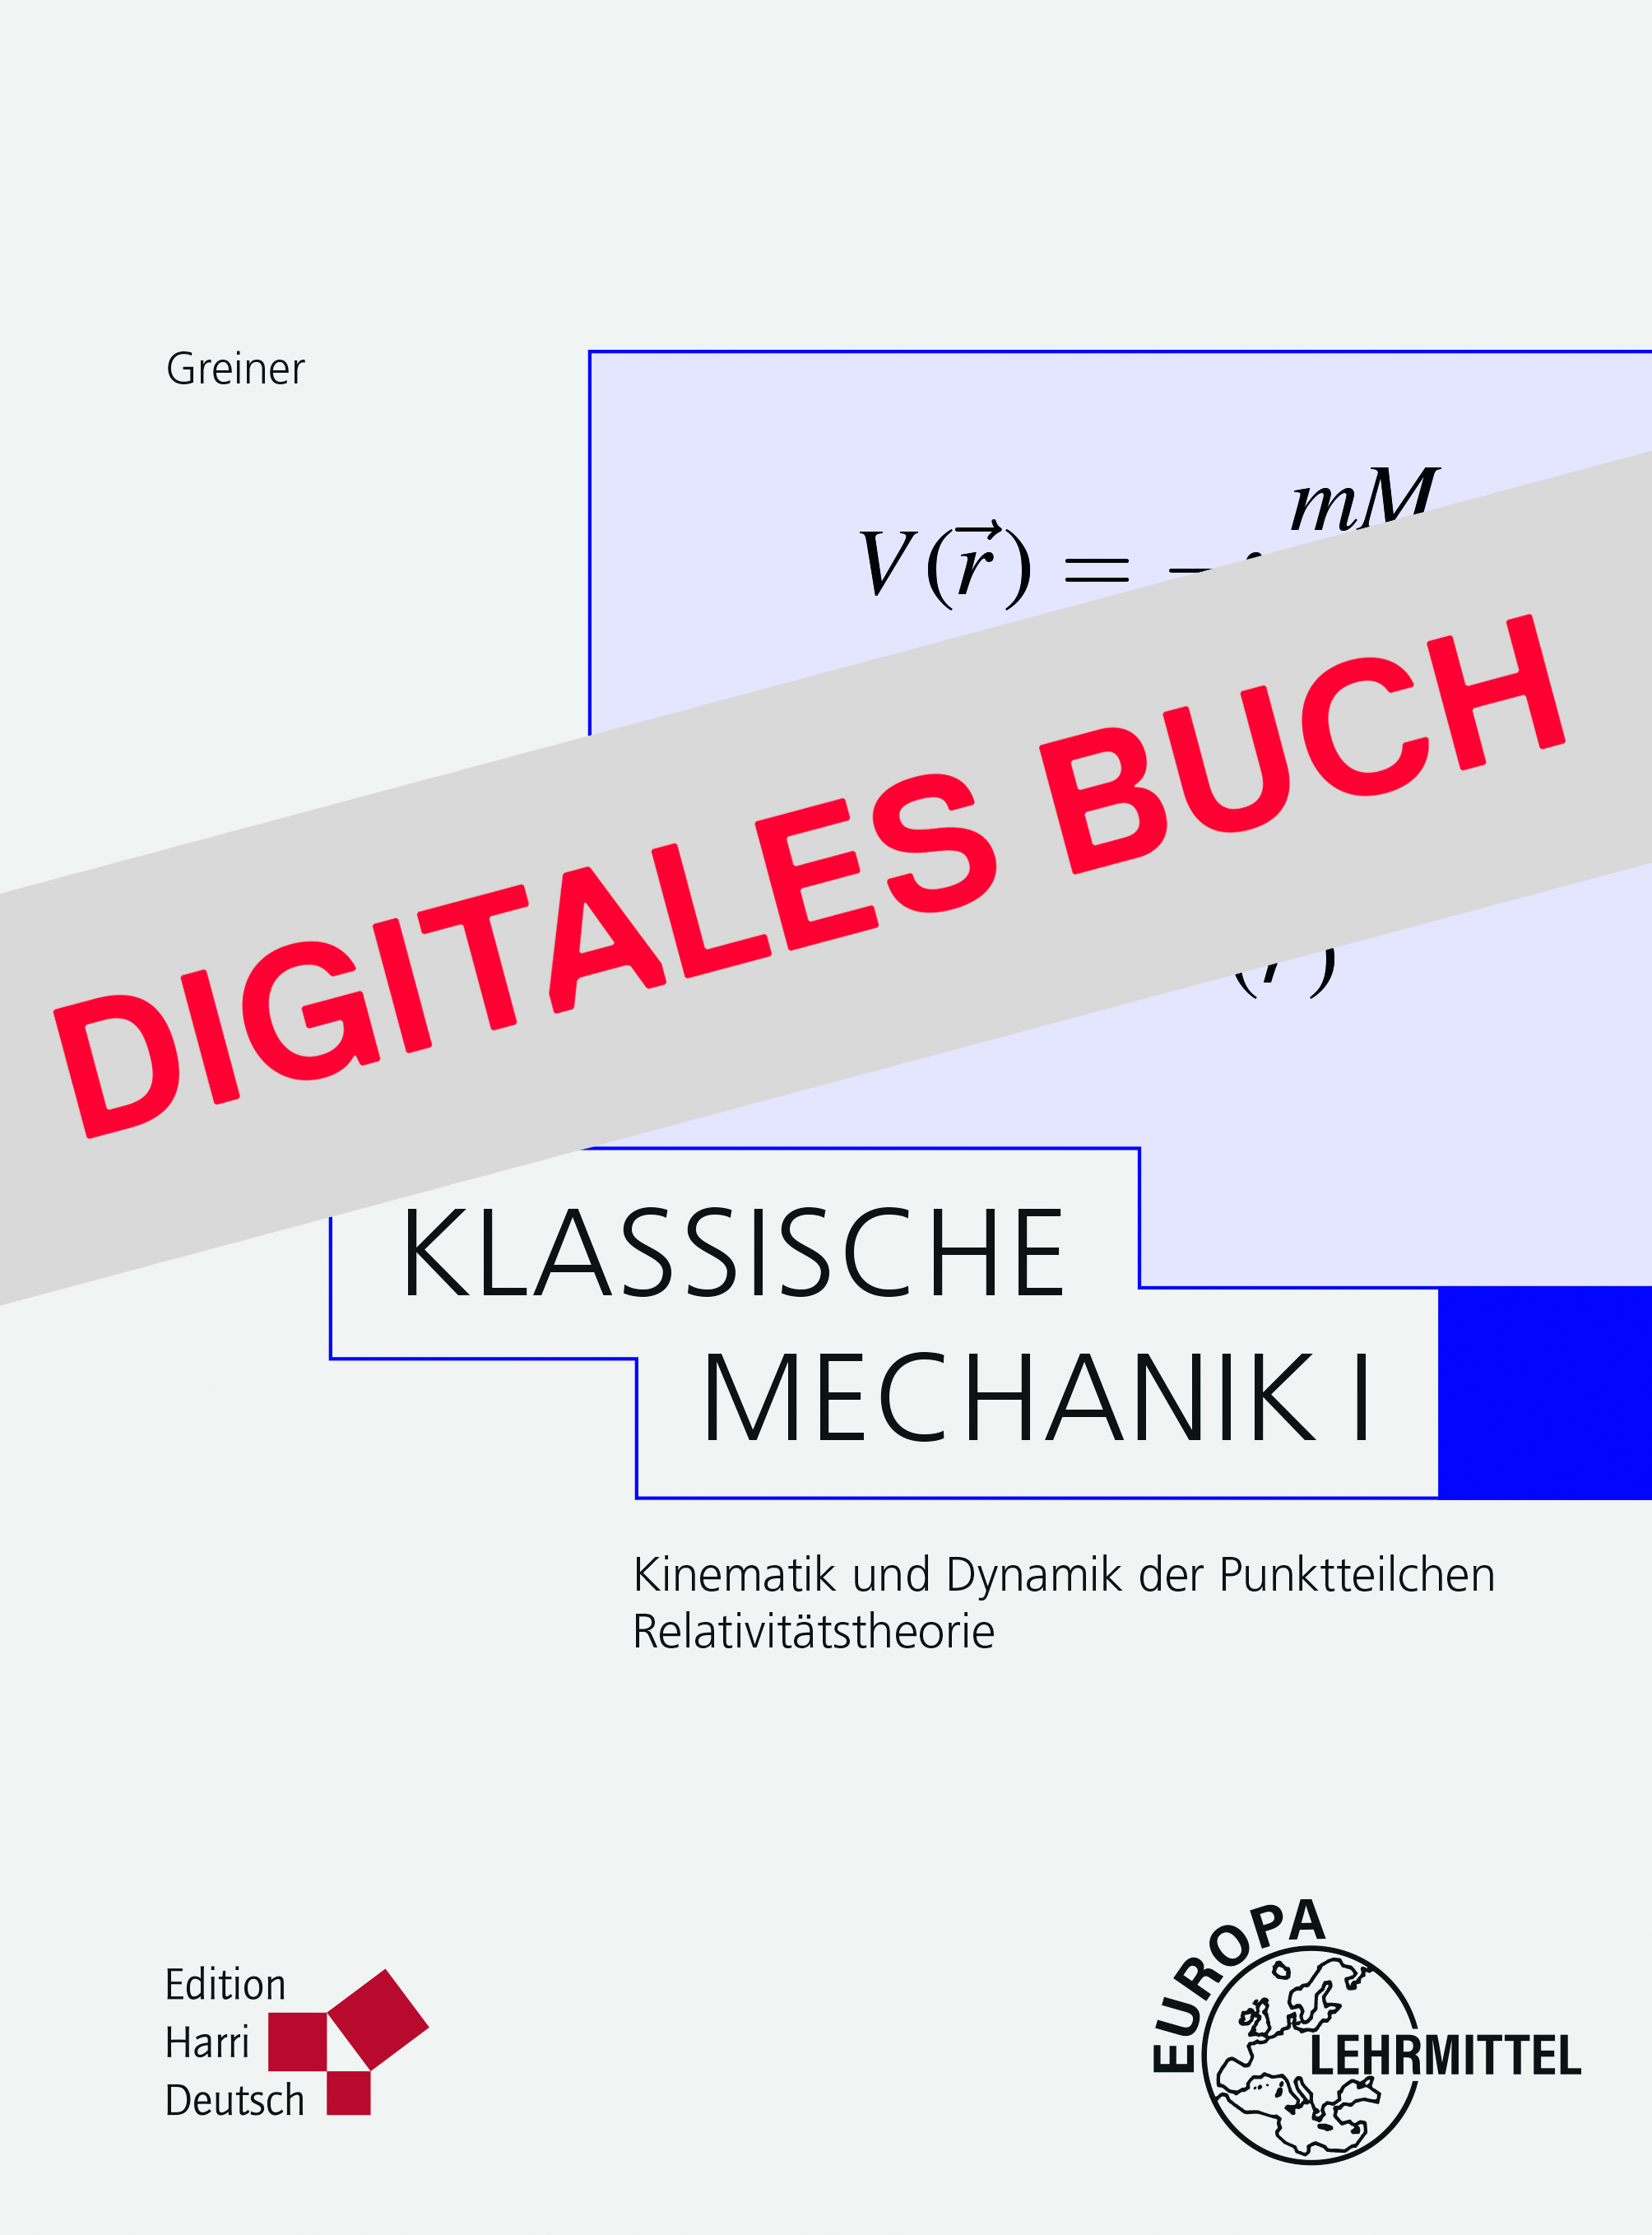 Klassische Mechanik I - Digitales Buch